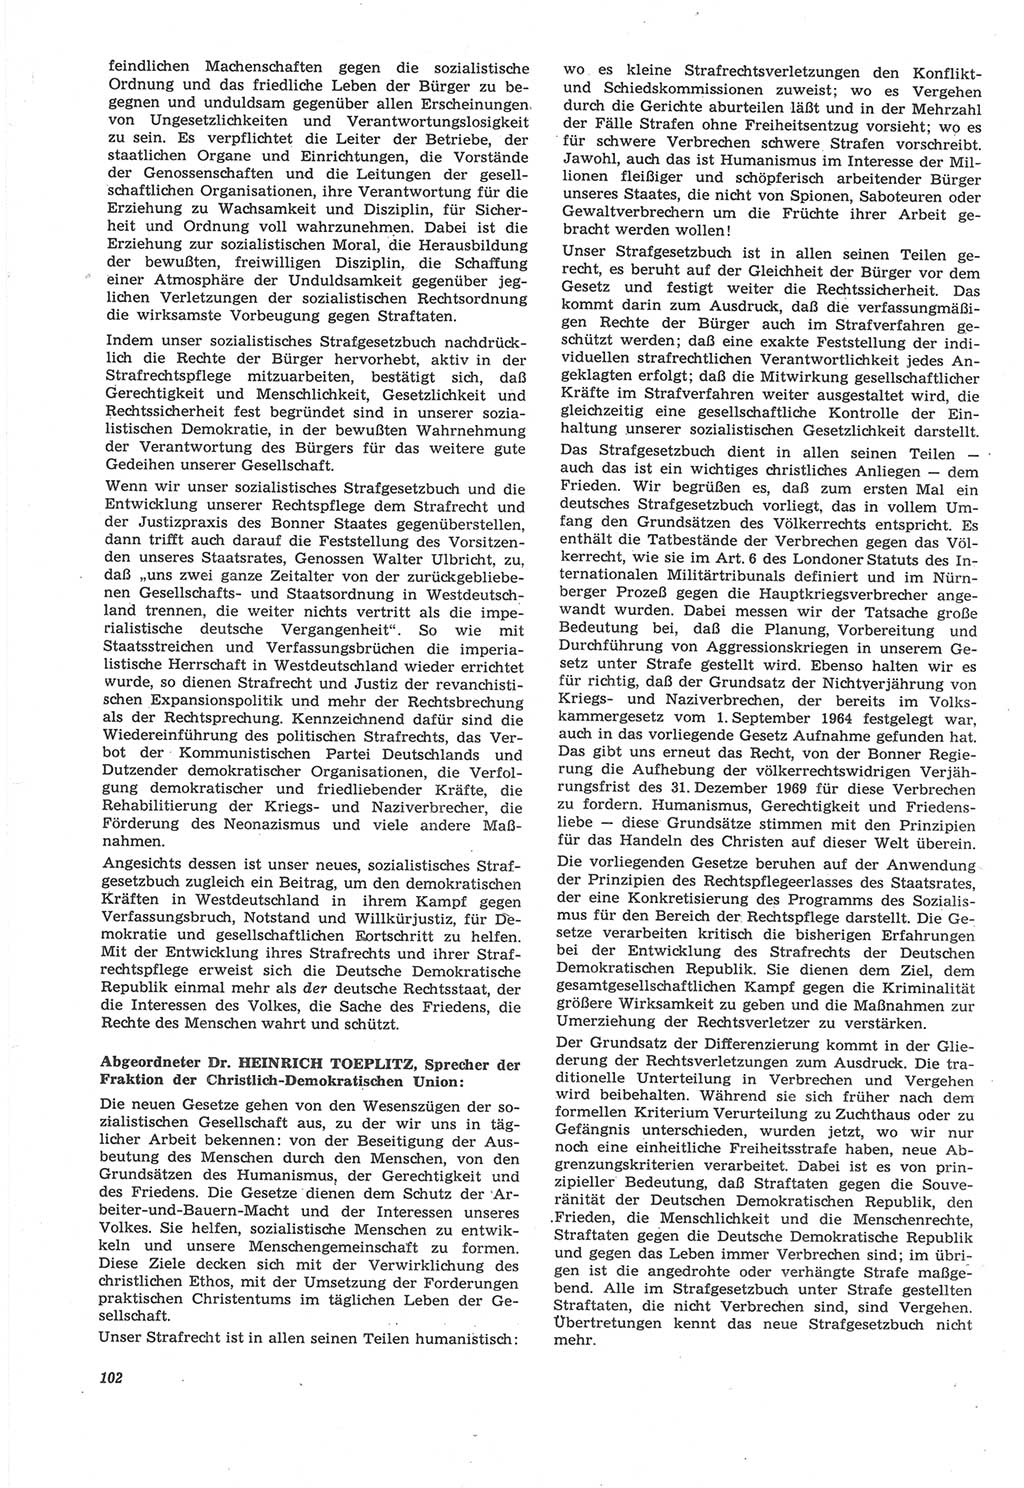 Neue Justiz (NJ), Zeitschrift für Recht und Rechtswissenschaft [Deutsche Demokratische Republik (DDR)], 22. Jahrgang 1968, Seite 102 (NJ DDR 1968, S. 102)